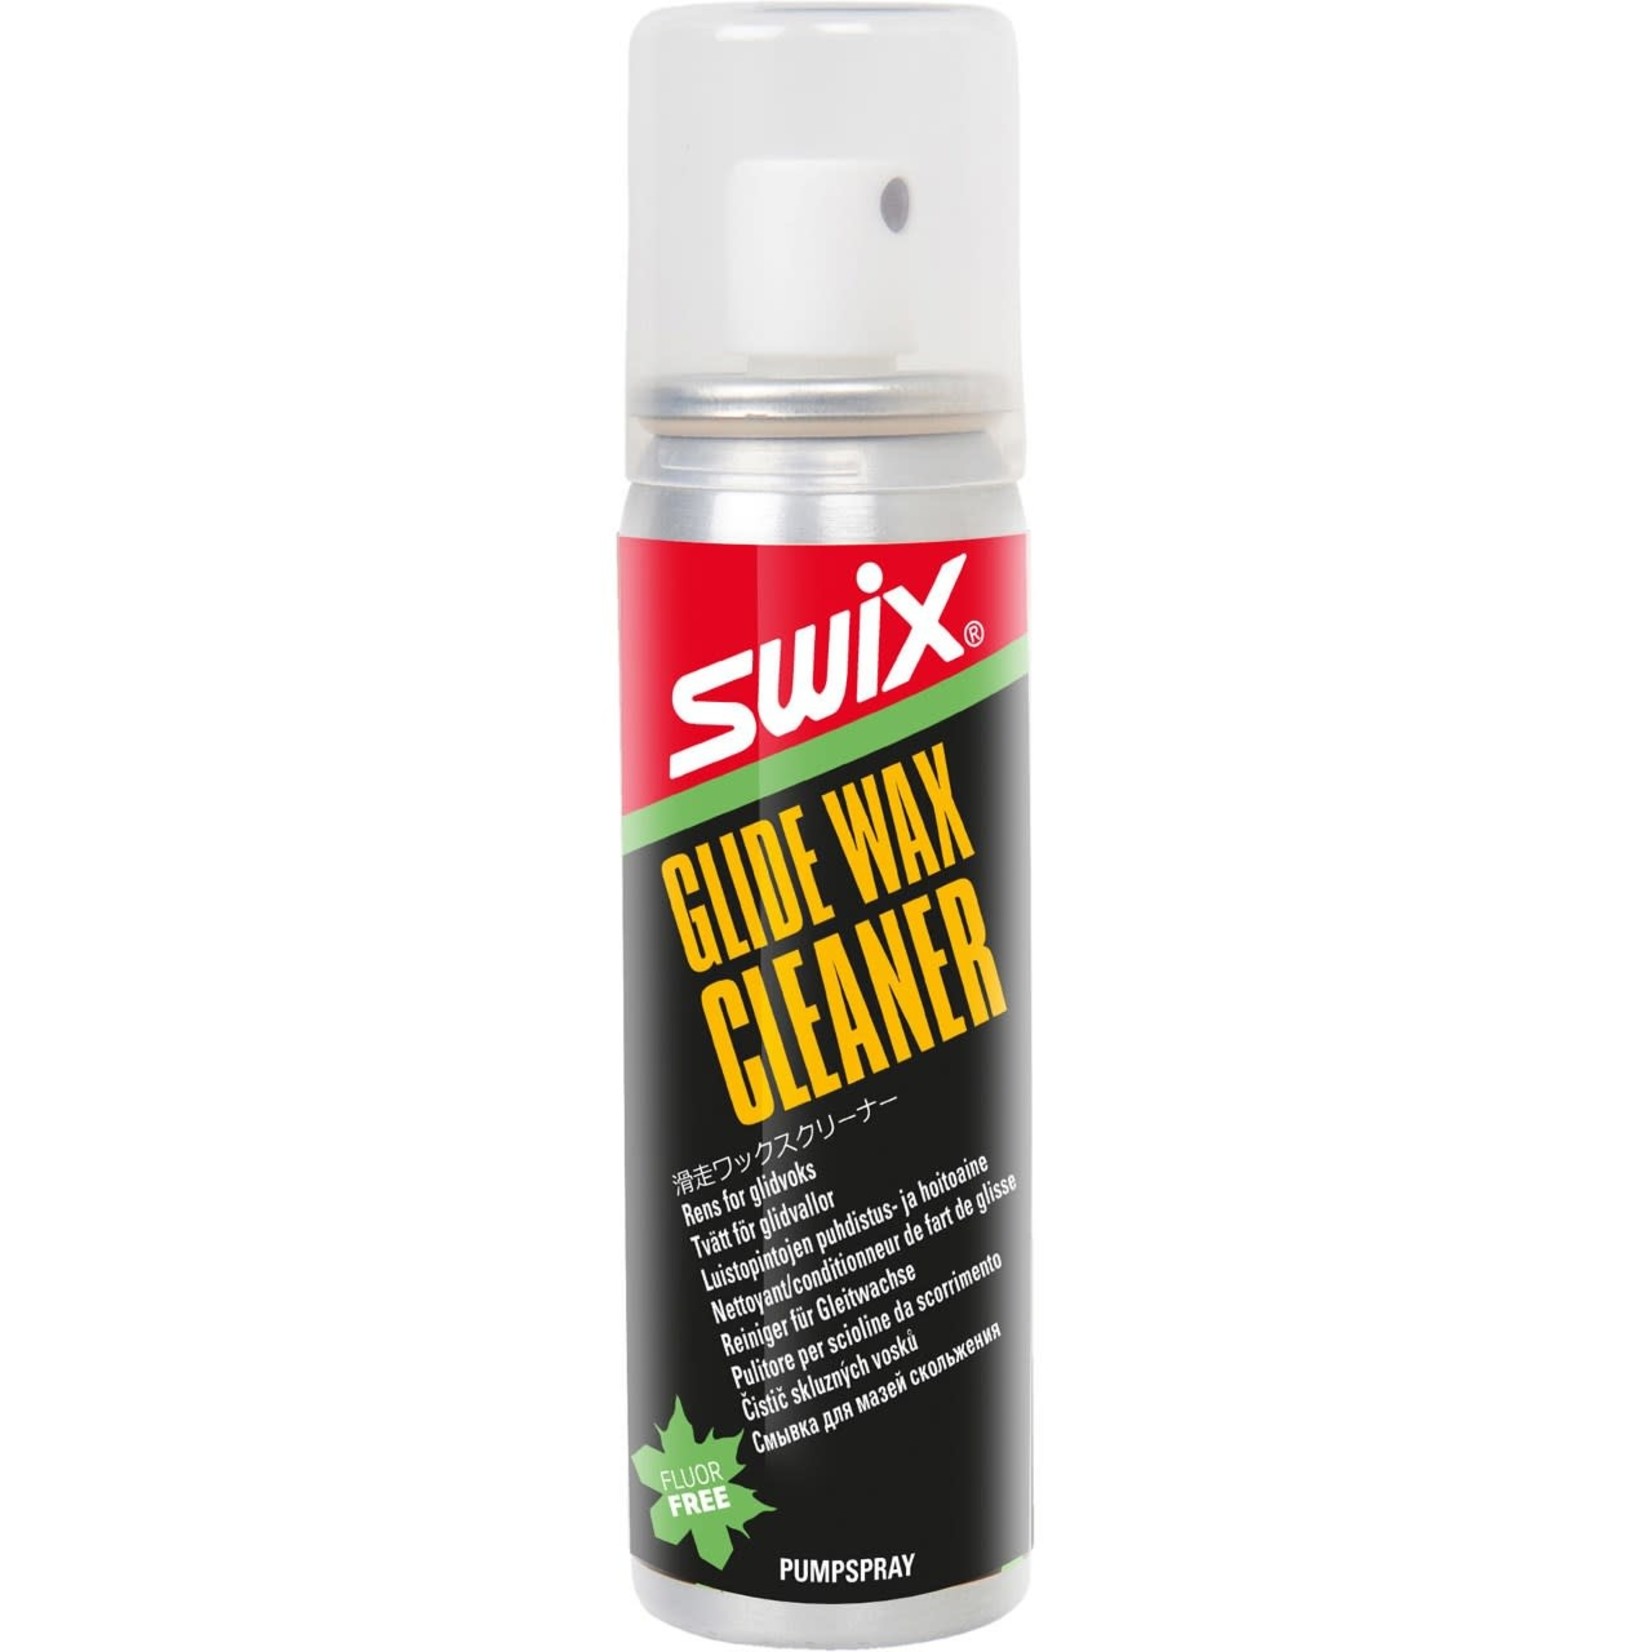 SWIX, Glide Wax Cleaner, 70ml